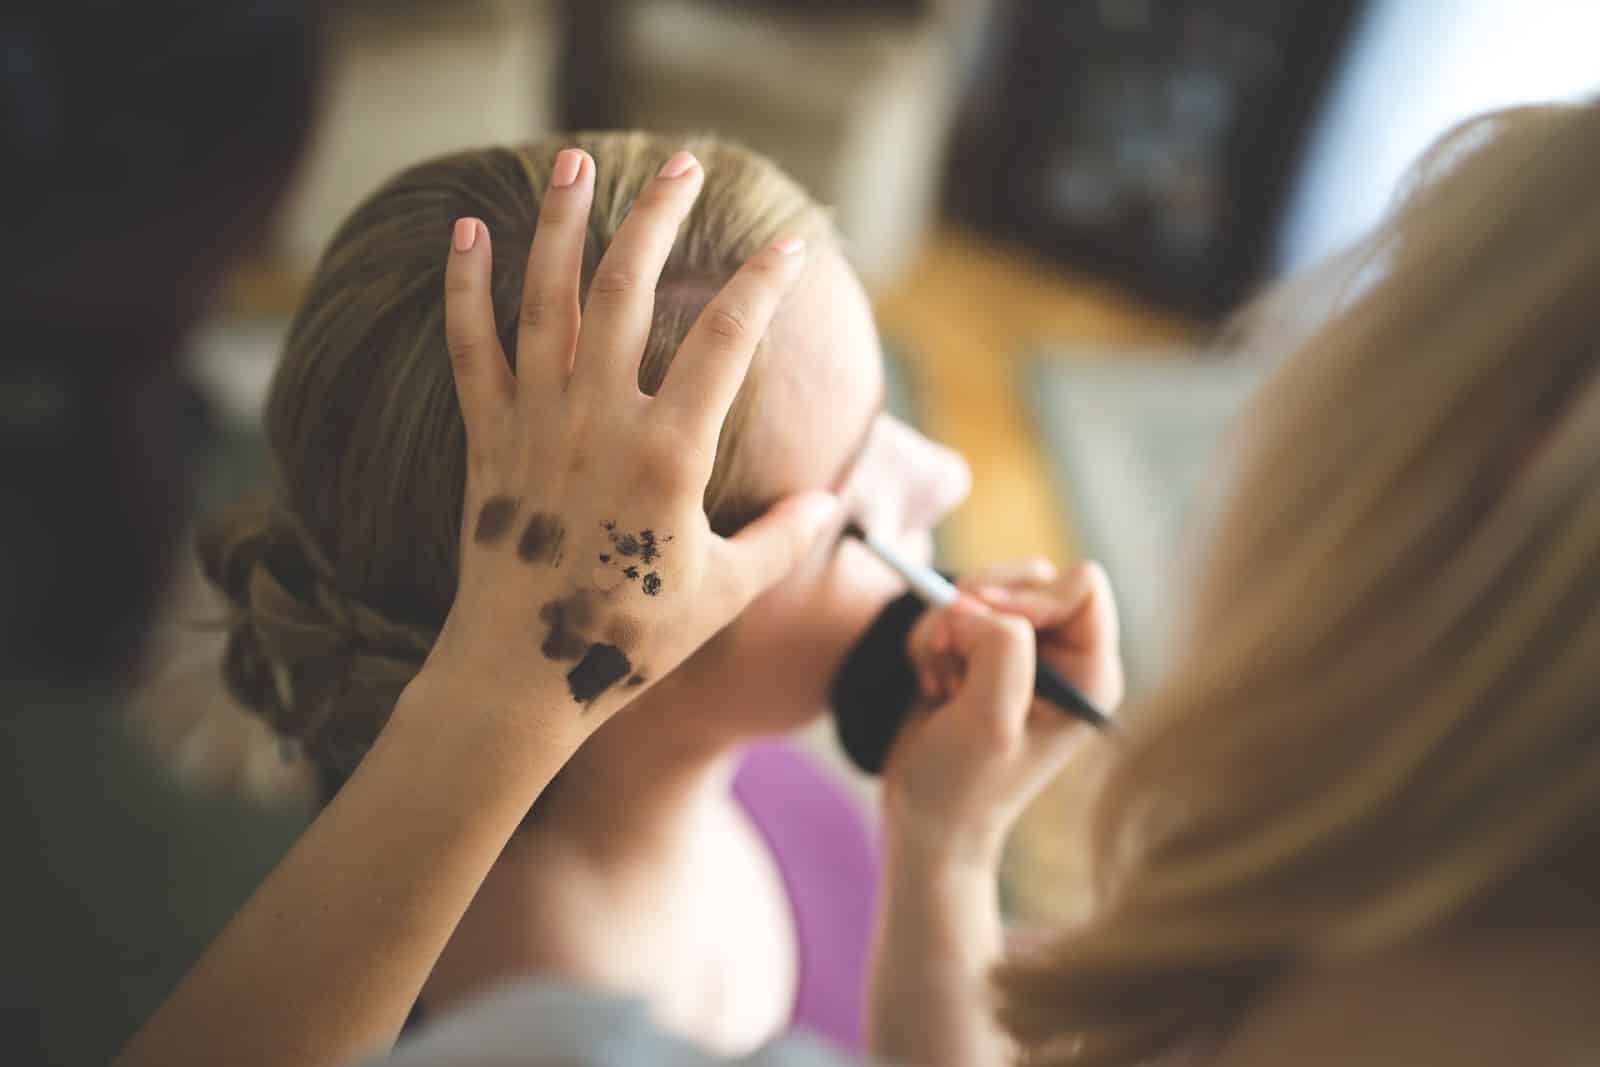 A makeup artist works on a client